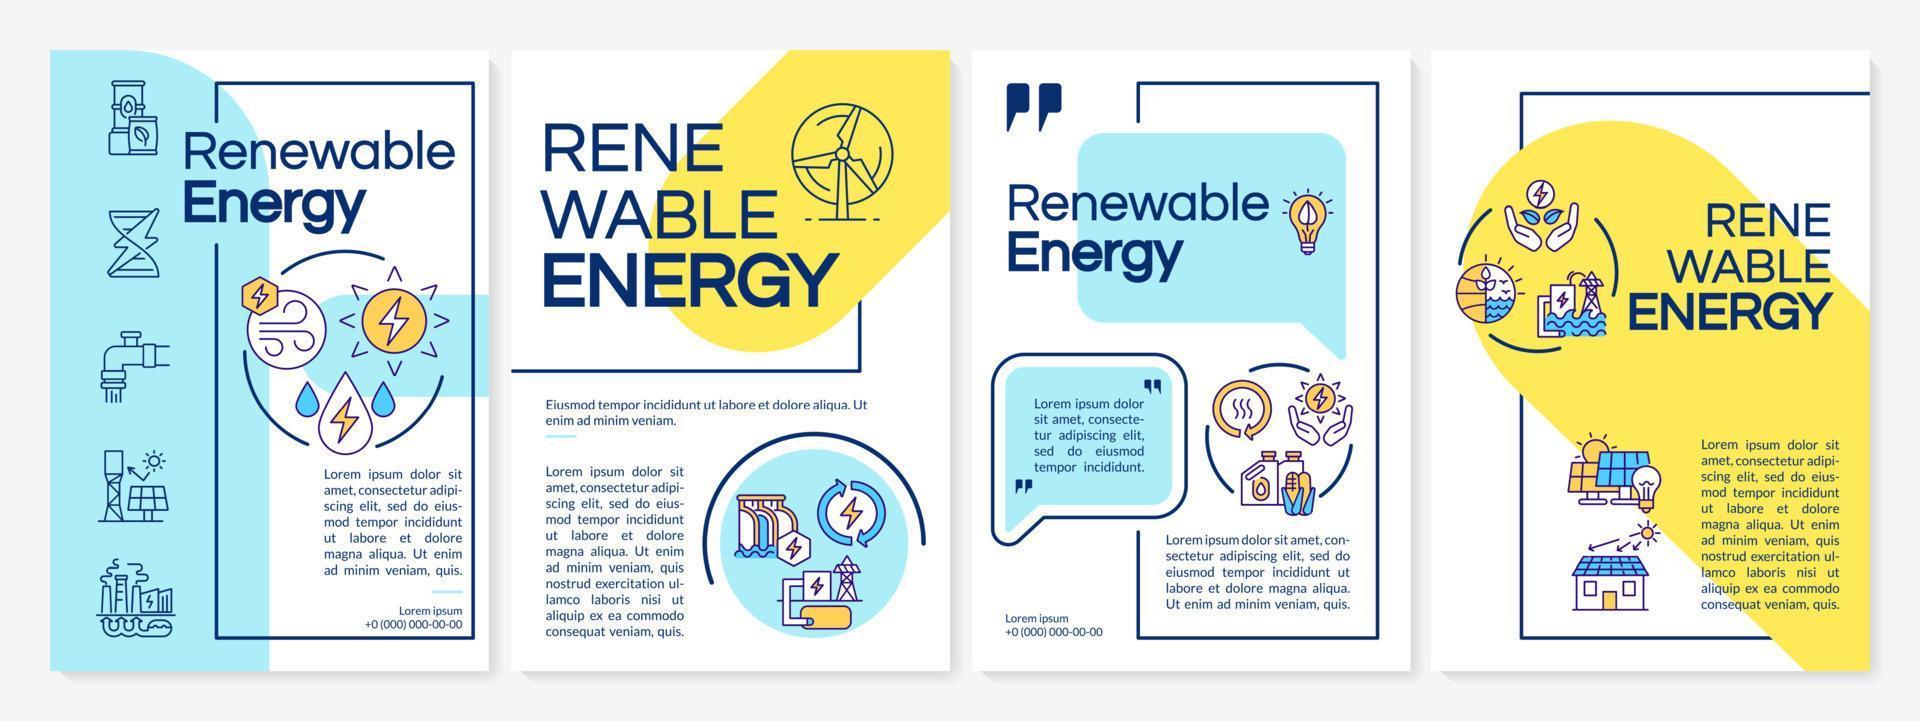 Renewable sources brochure template vector